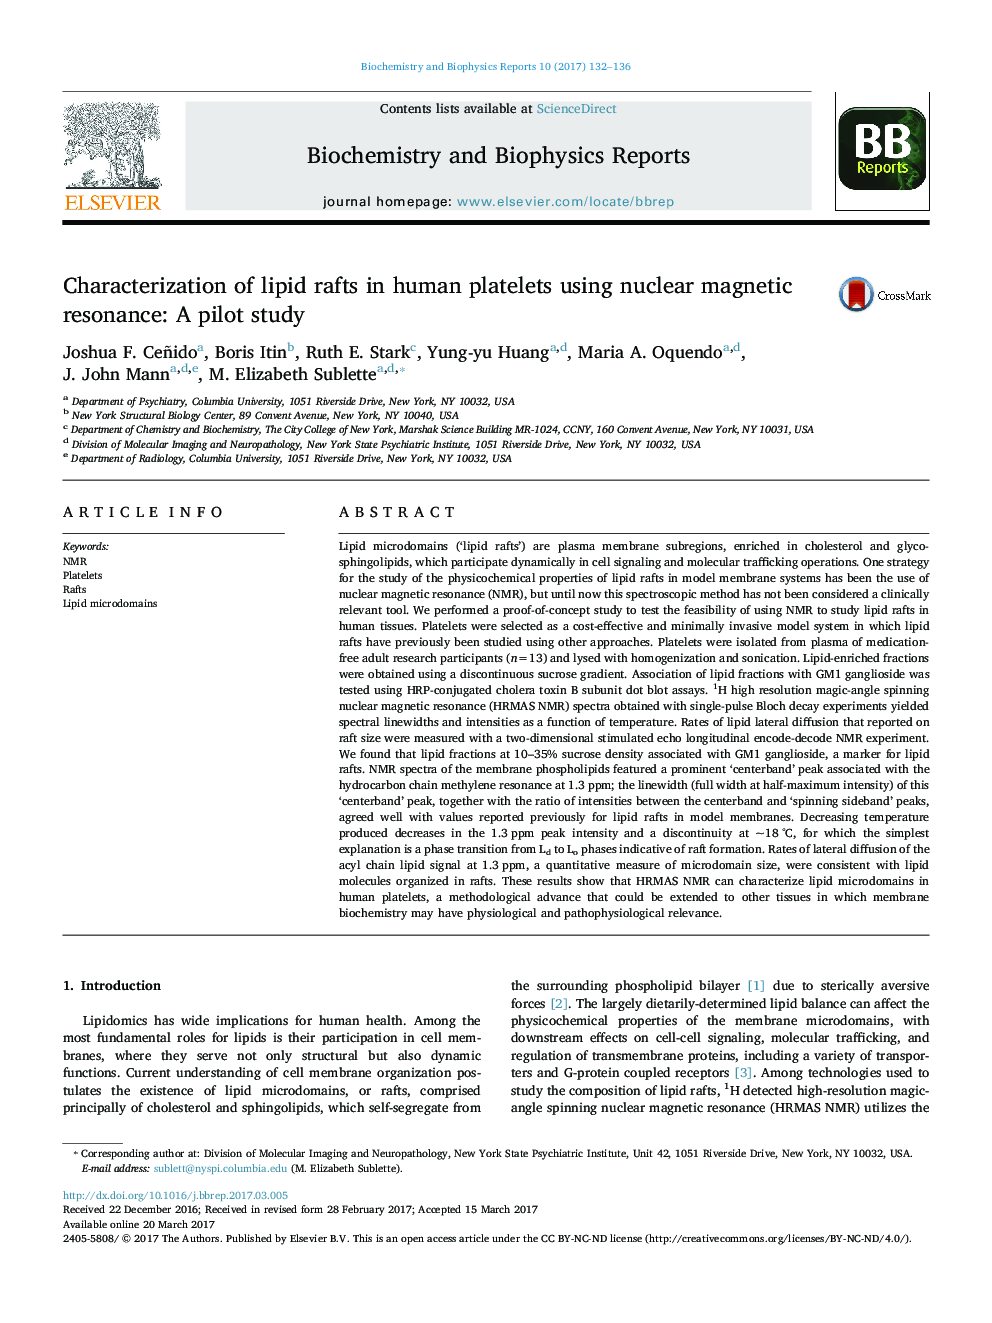 تعیین پارک های چربی در پلاکت های انسانی با استفاده از رزونانس مغناطیسی هسته: یک مطالعه آزمایشی 